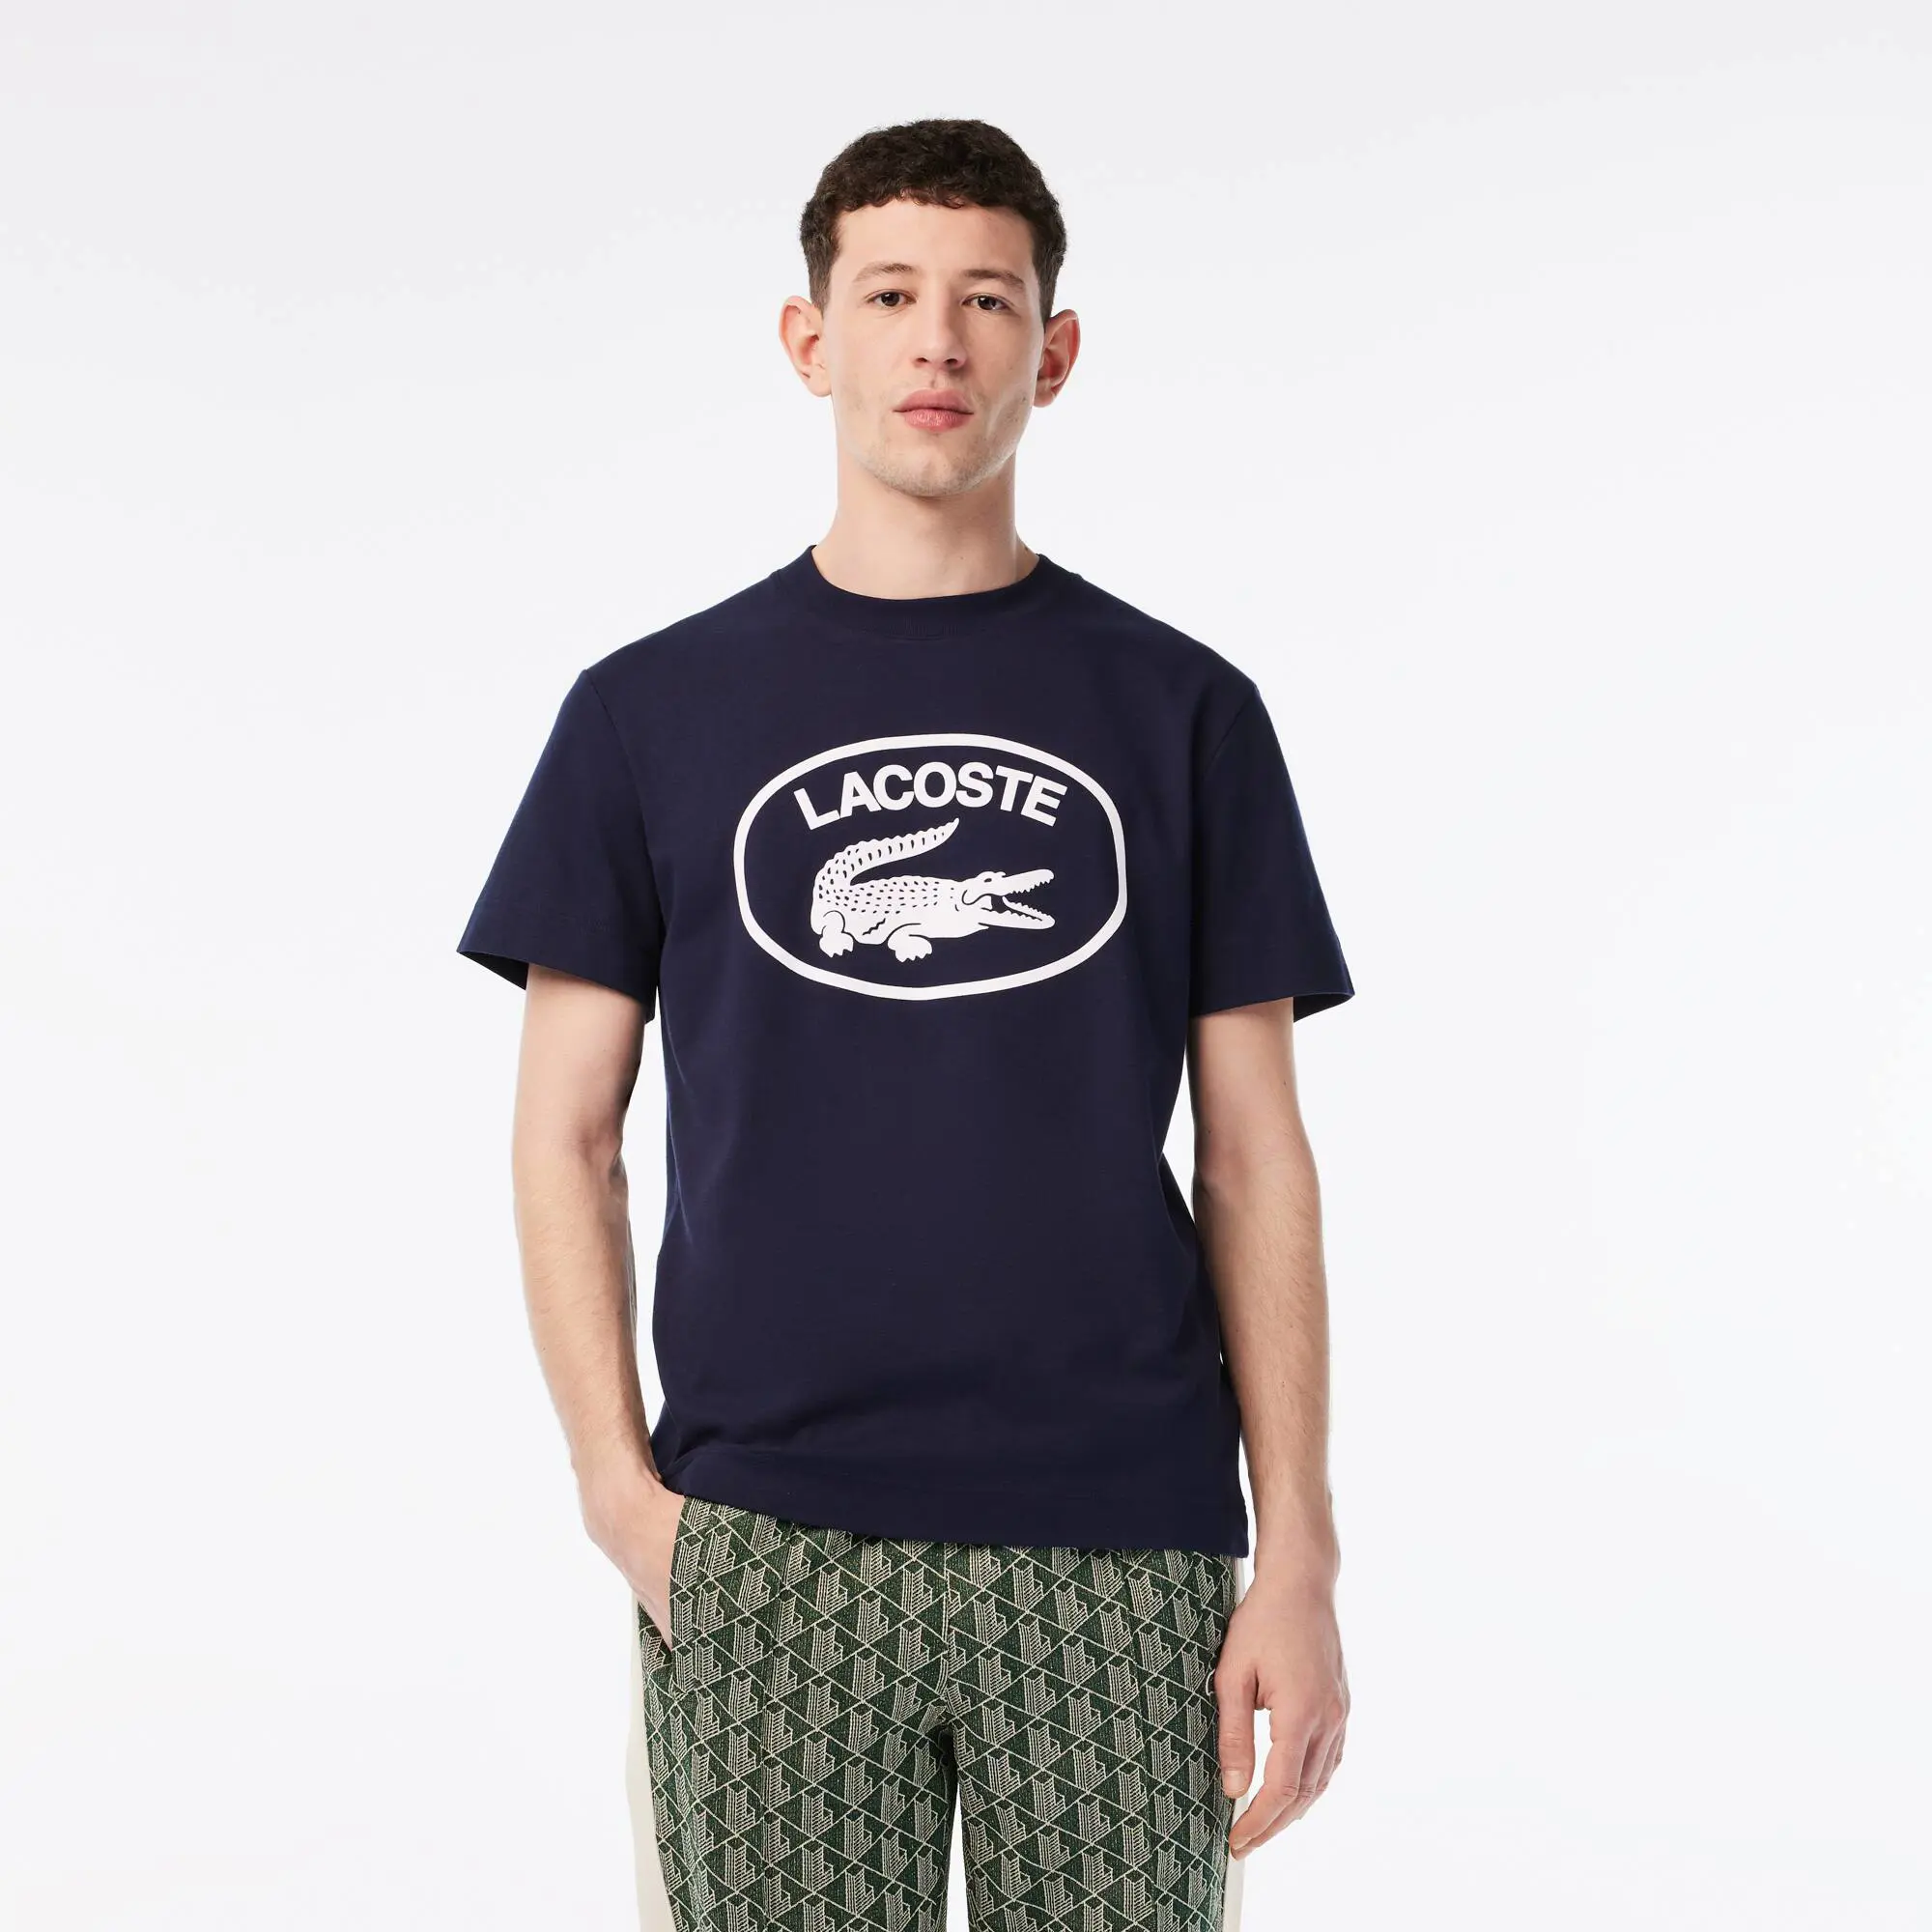 Lacoste T-shirt da uomo in cotone con logo tono tono, relaxed fit. 1